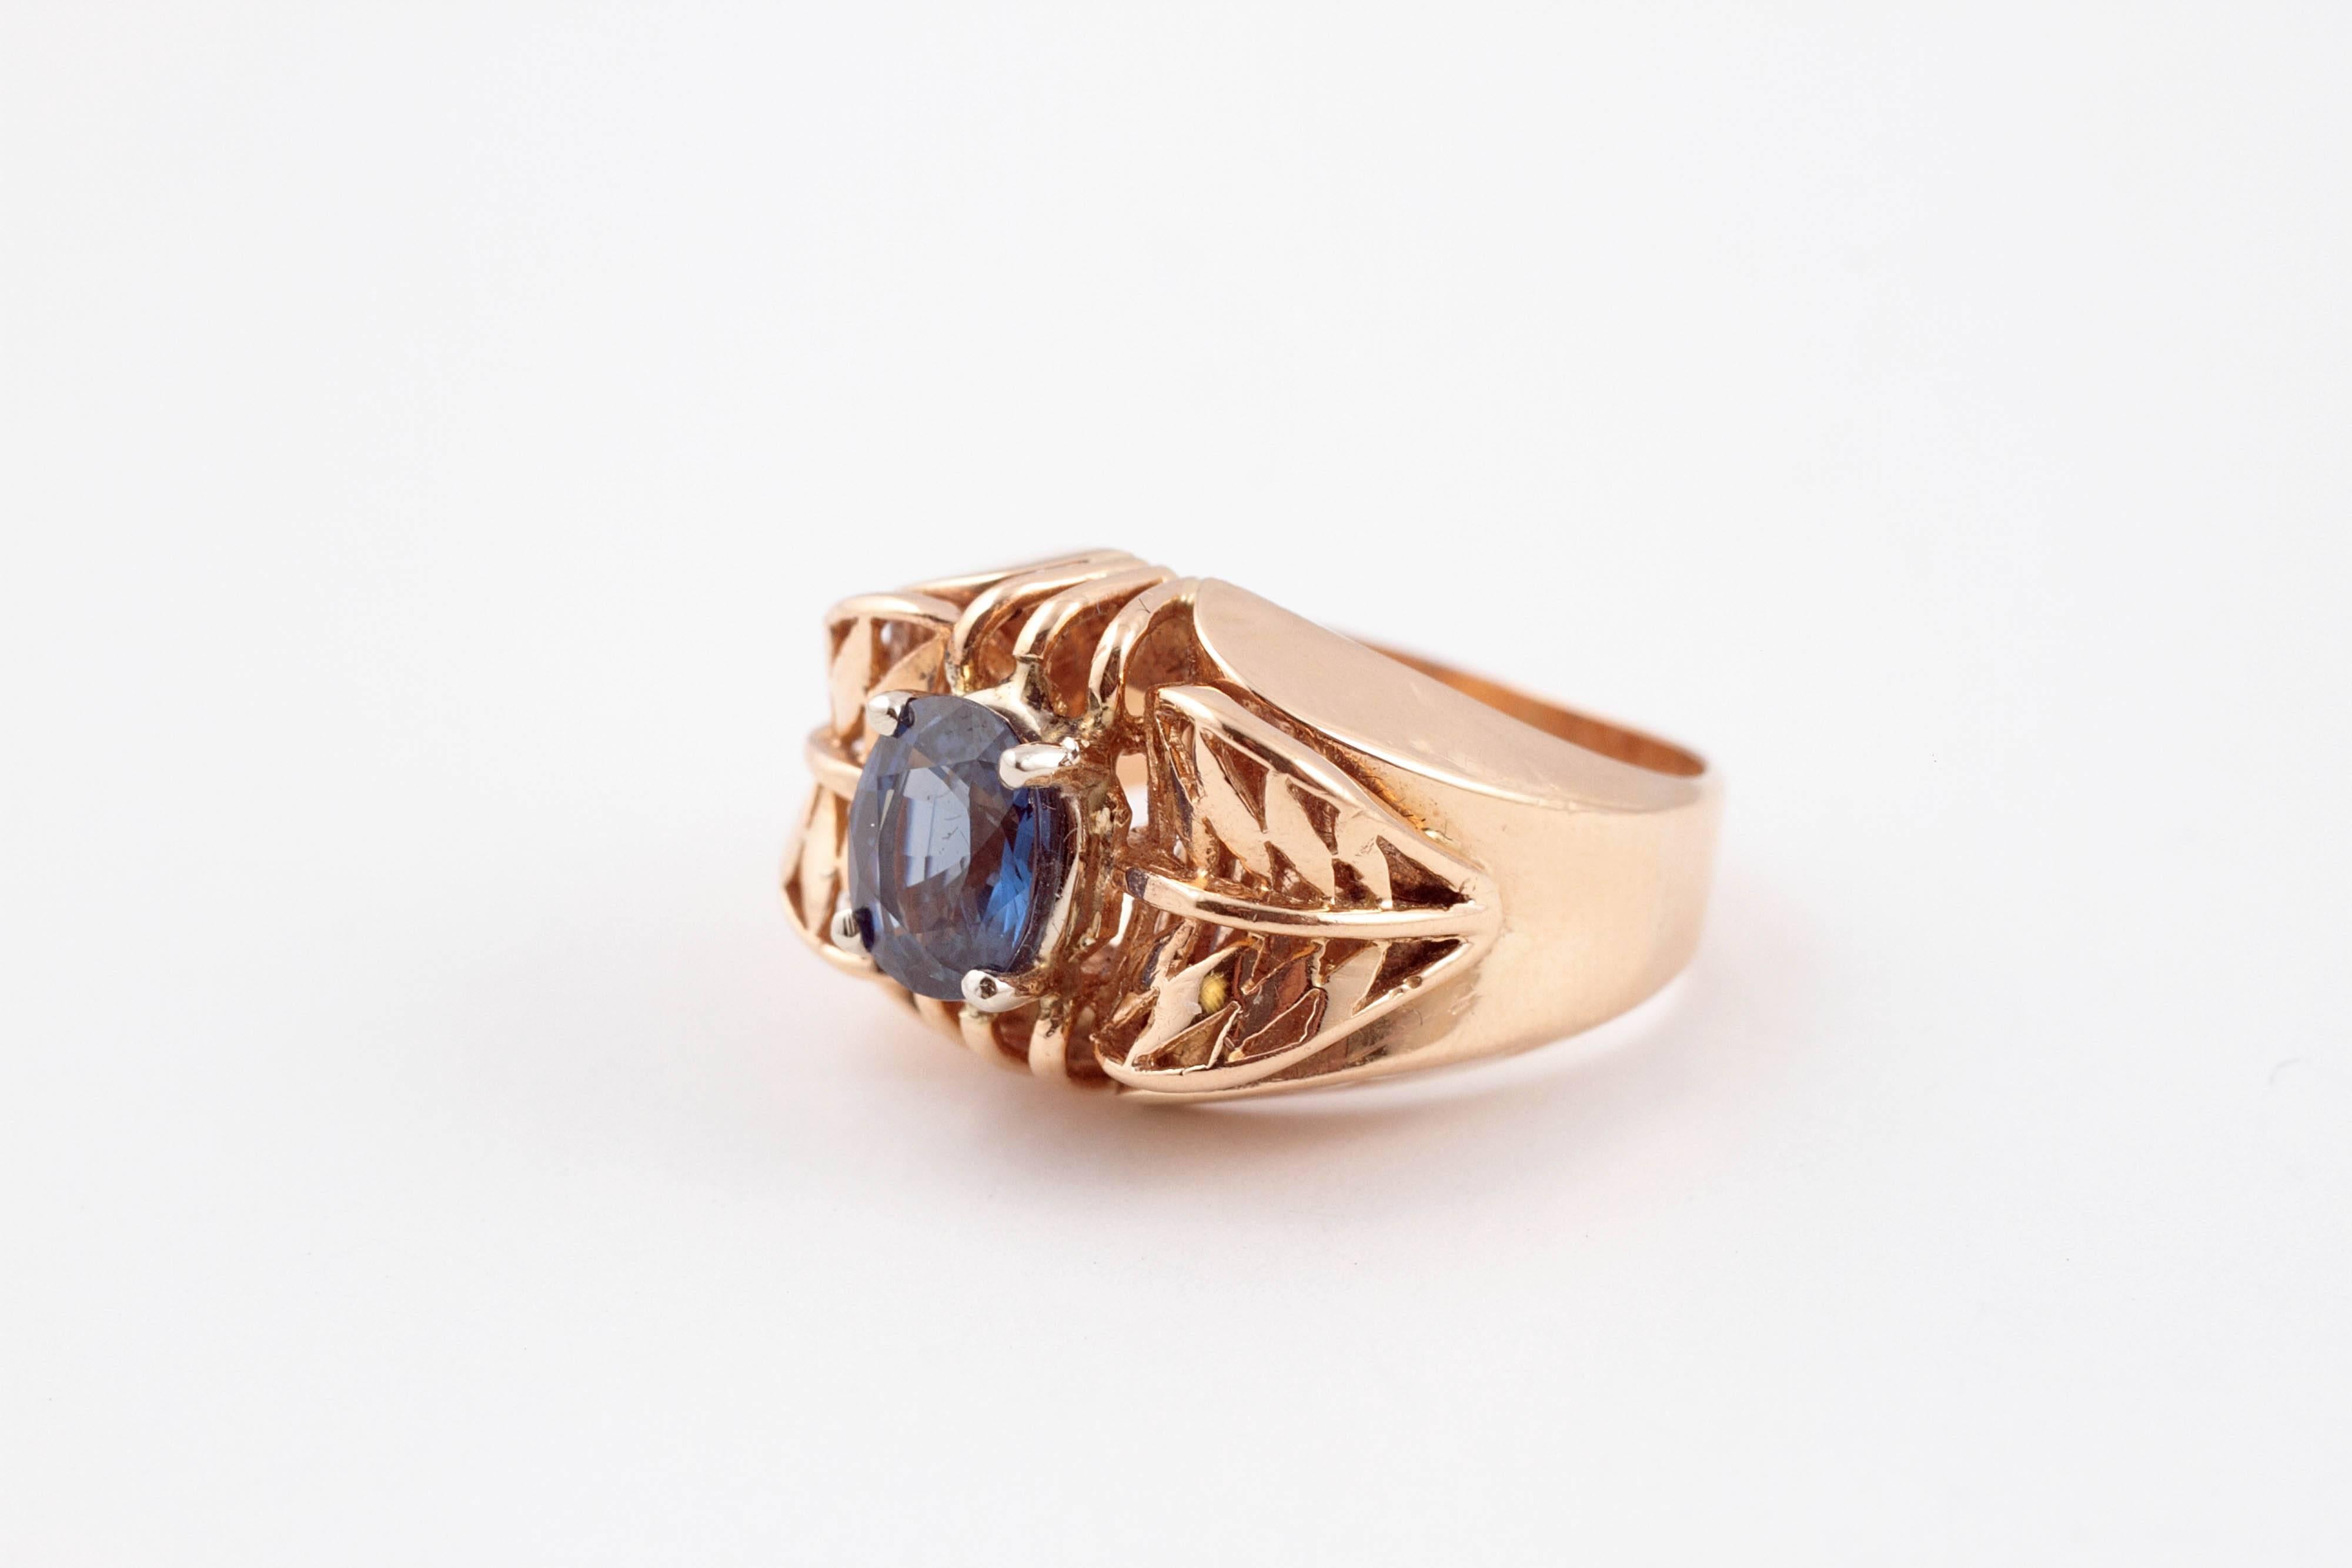 1.35 carat blue sapphire set in intricate 14 karat gold mounting.  Size 7.